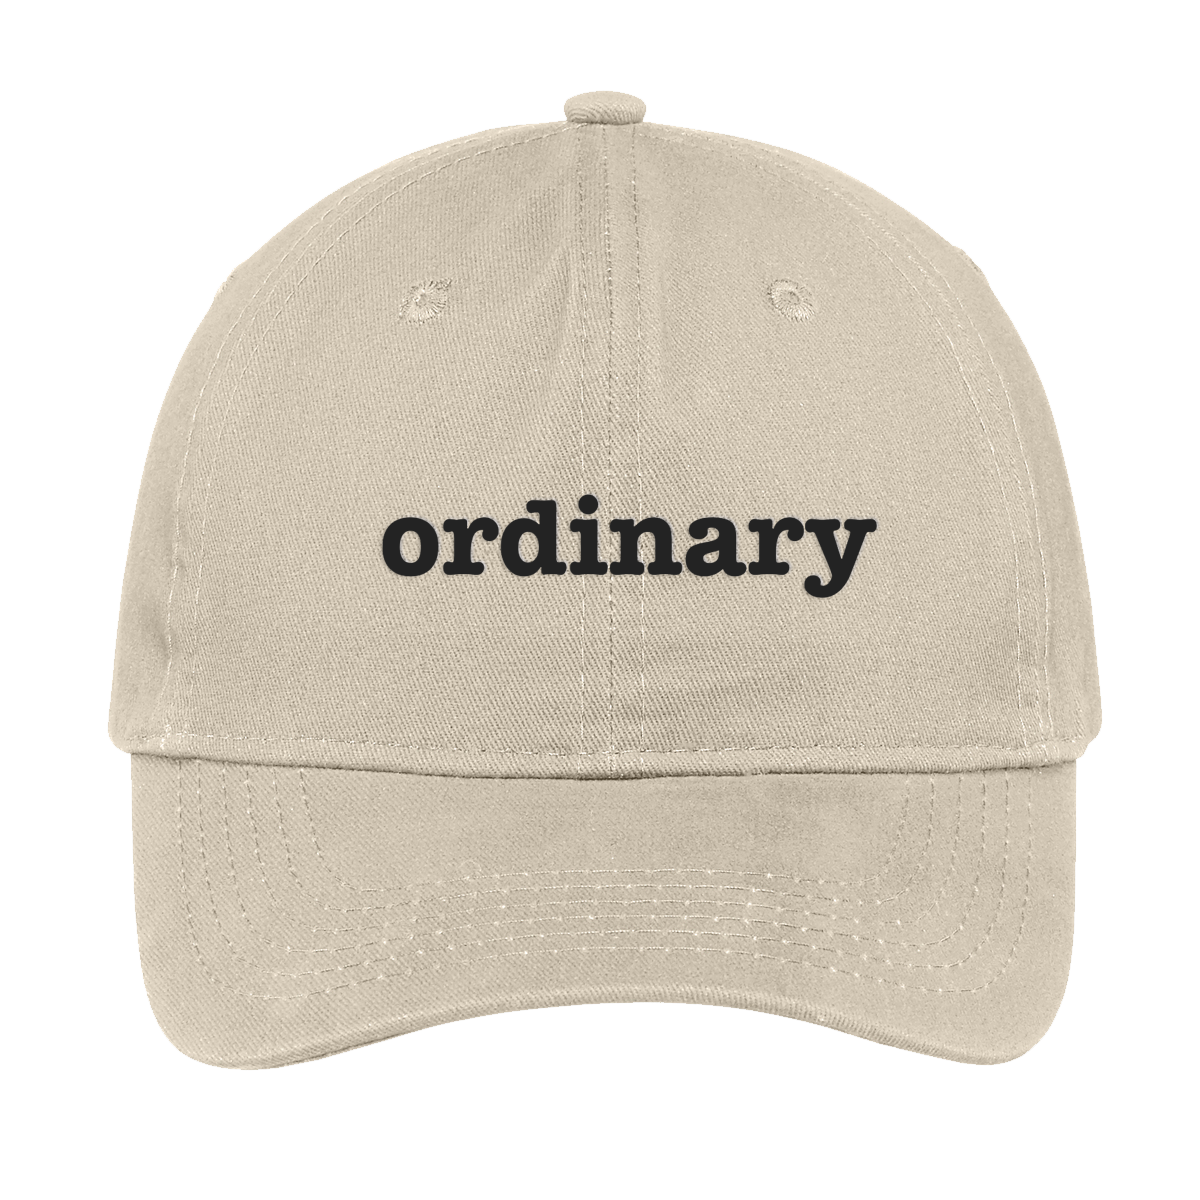 Ordinary Listener Club Hat - Tan